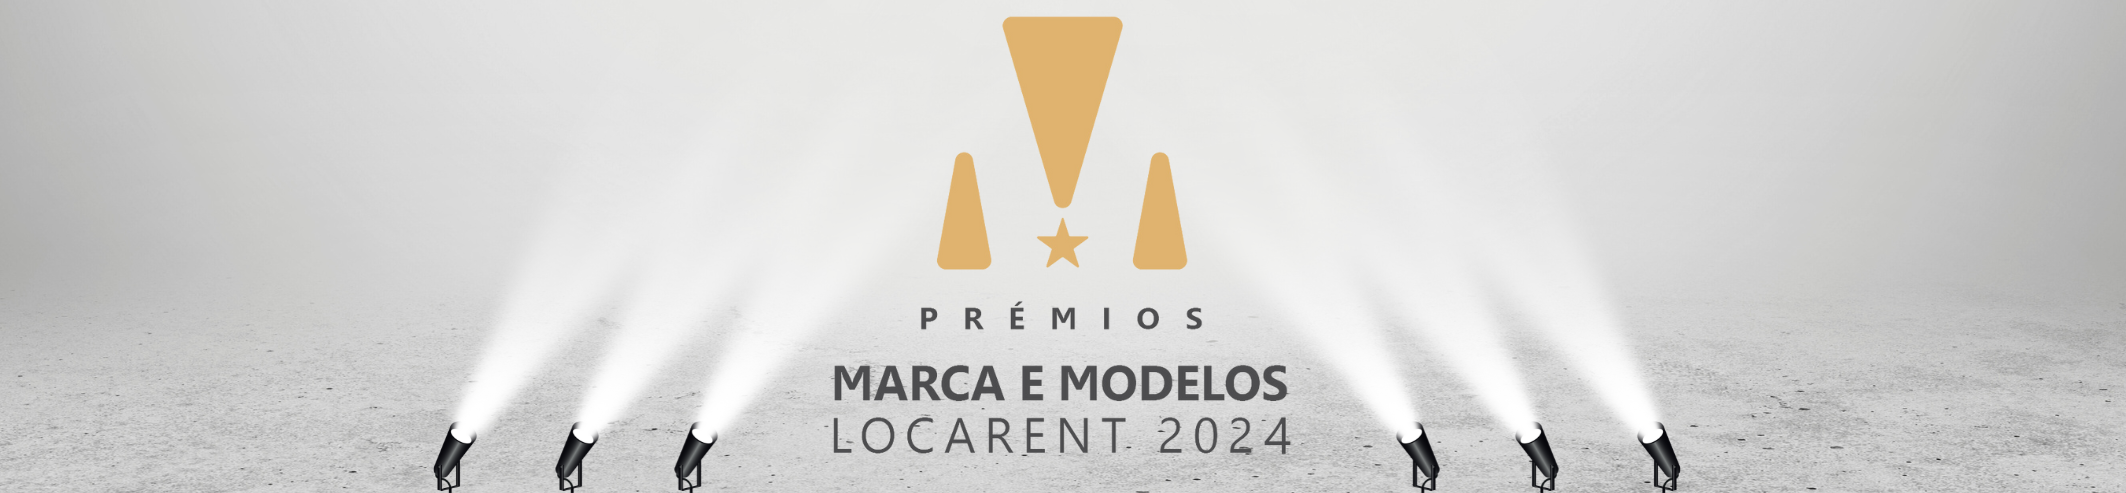 5ª edição dos Prémios “Marca e Modelos do Ano Locarent 2024”